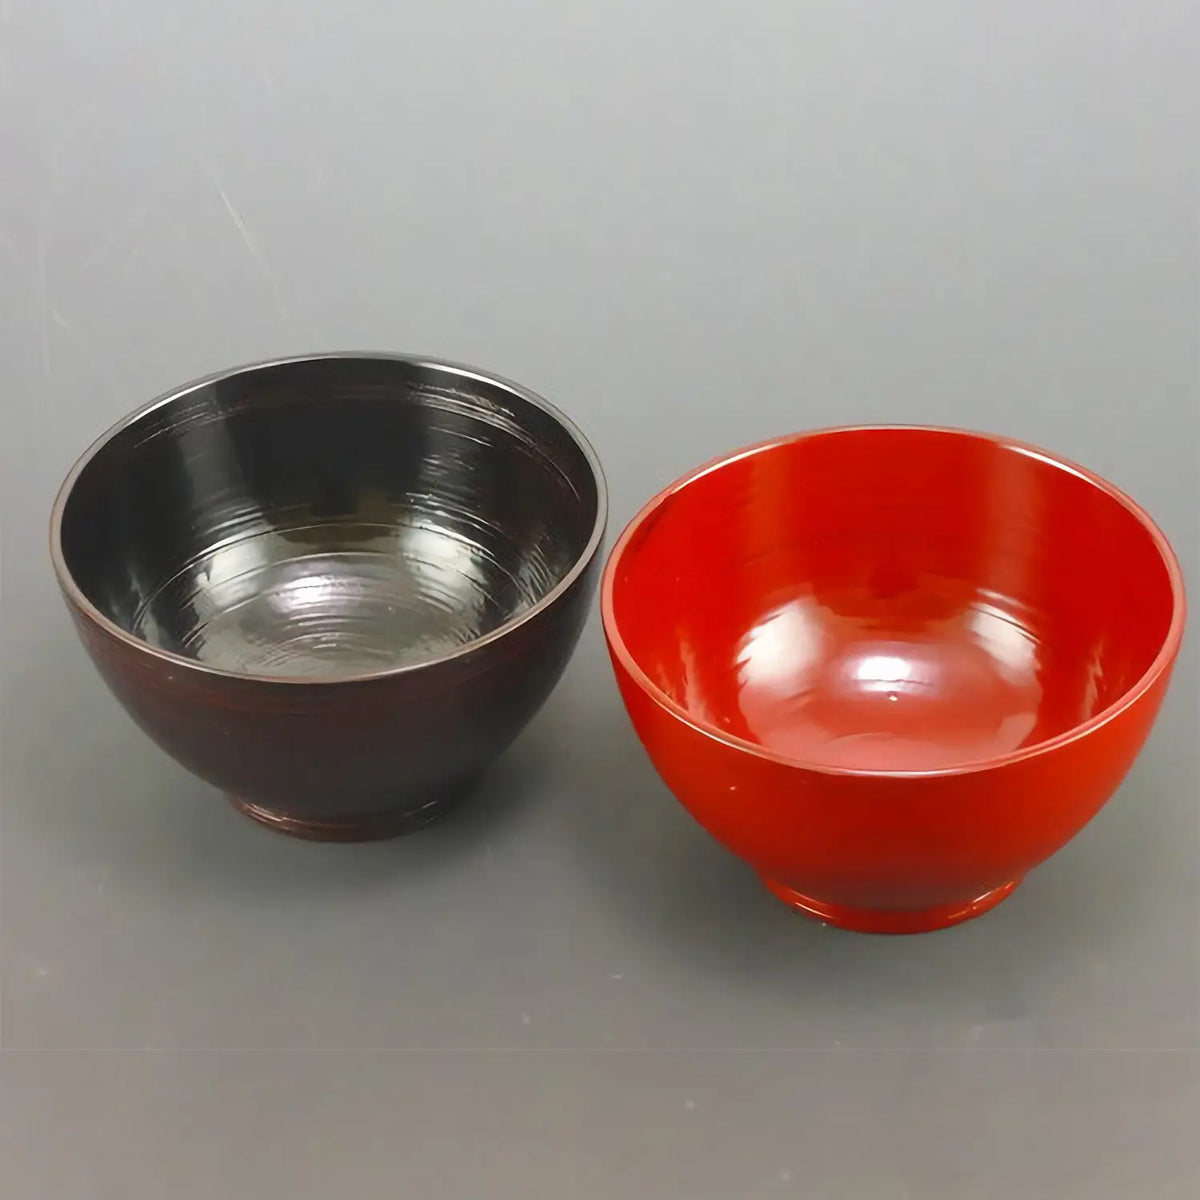 Echizen Shikki Wood Couple Small Bowls Hakeme Brush Marks